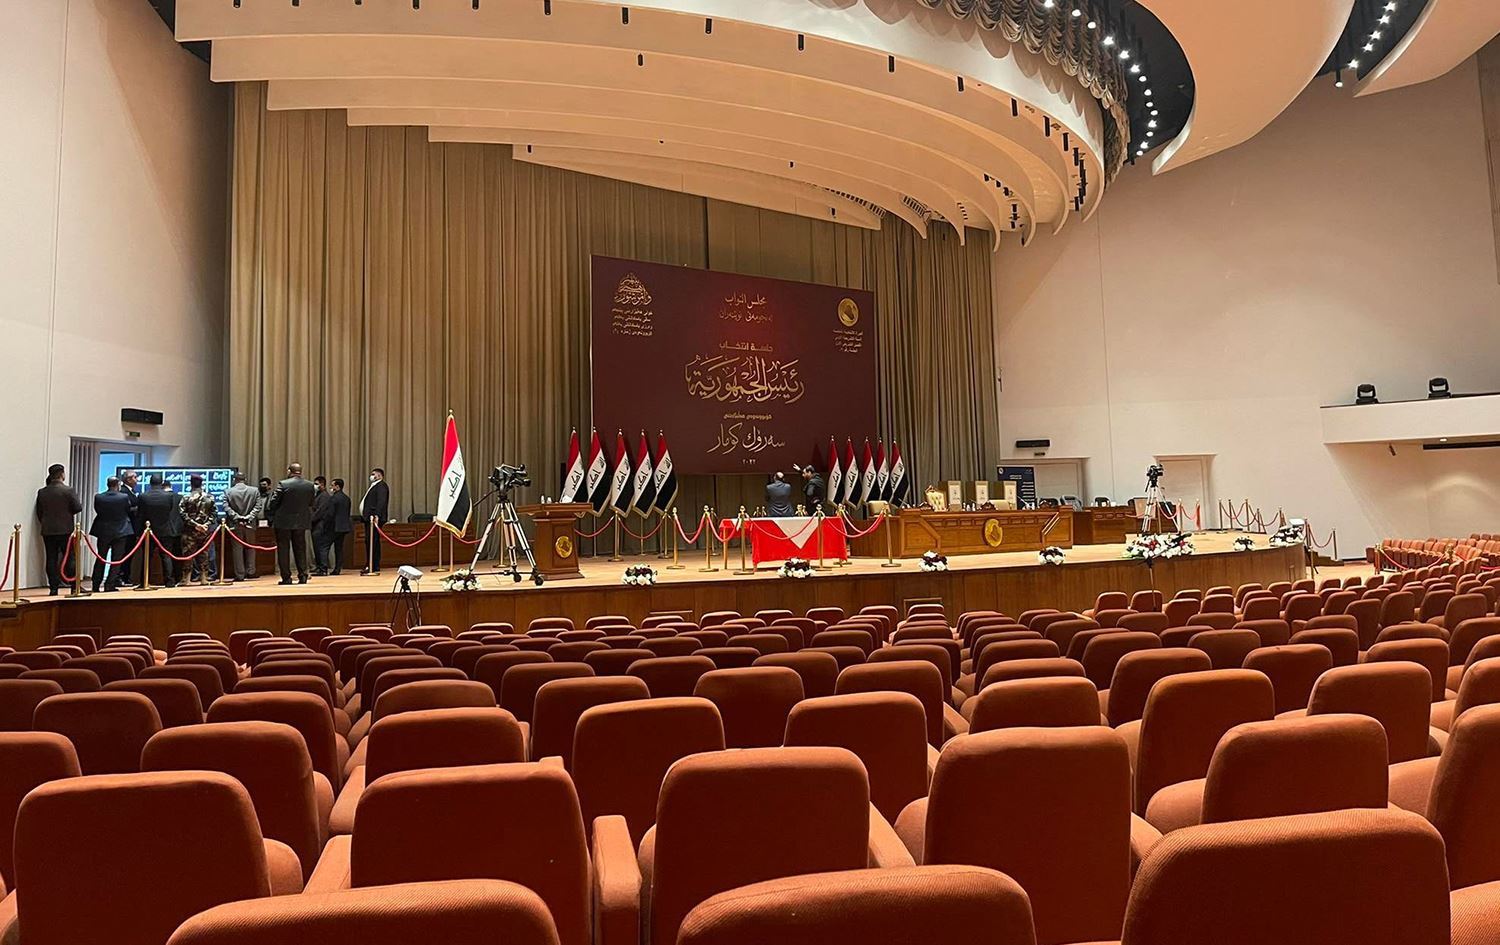 البرلمان العراقي يفشل في عقد جلسته.. فهل تنجح "صفقة الساعات الأخيرة"؟